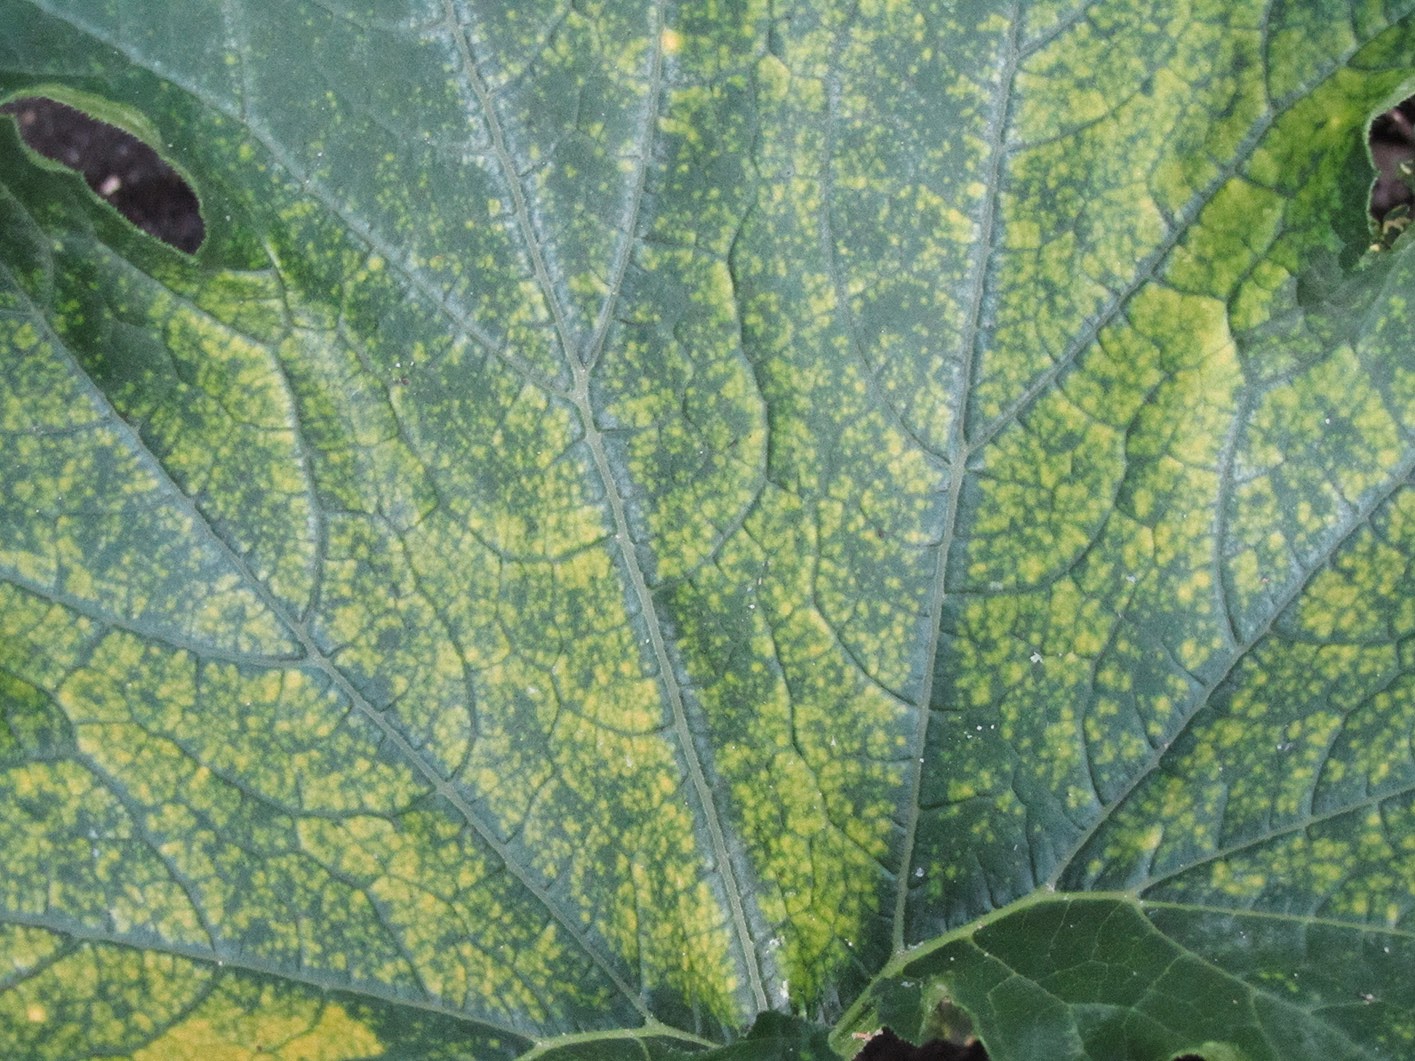 zucchini leaf